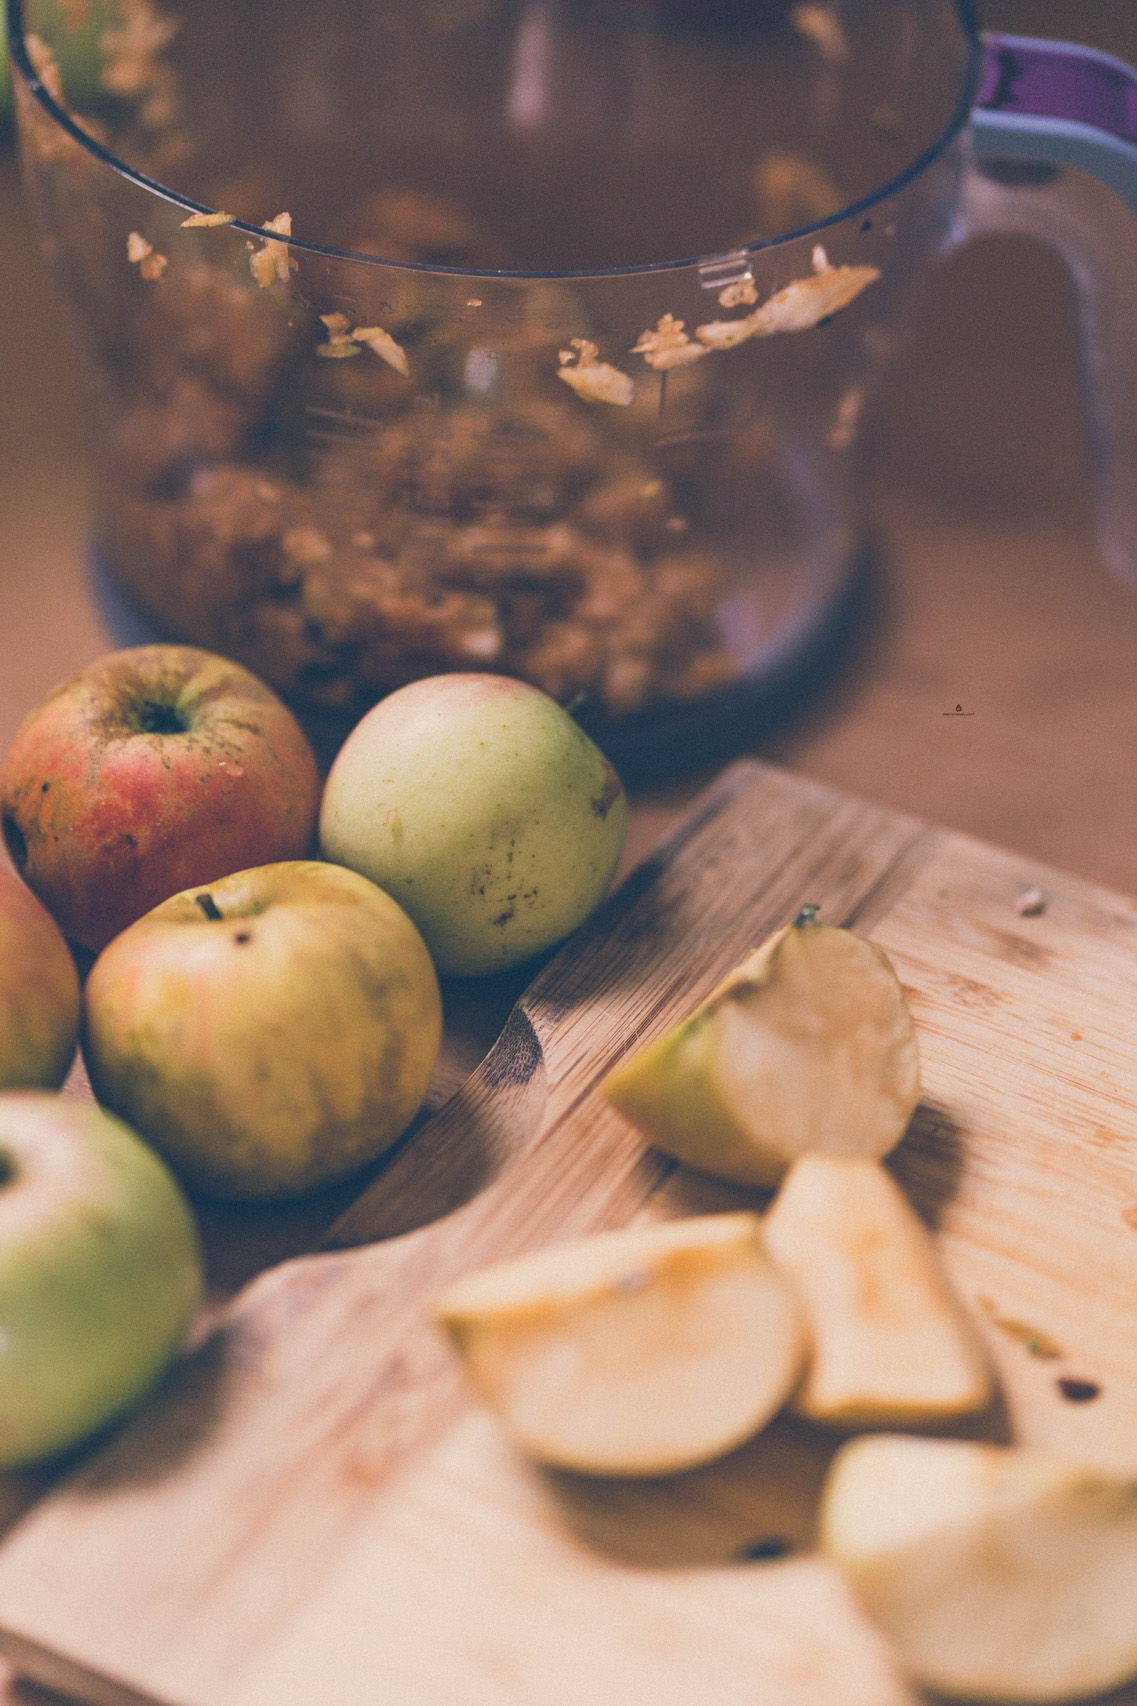 Preparing apples for the fermentation